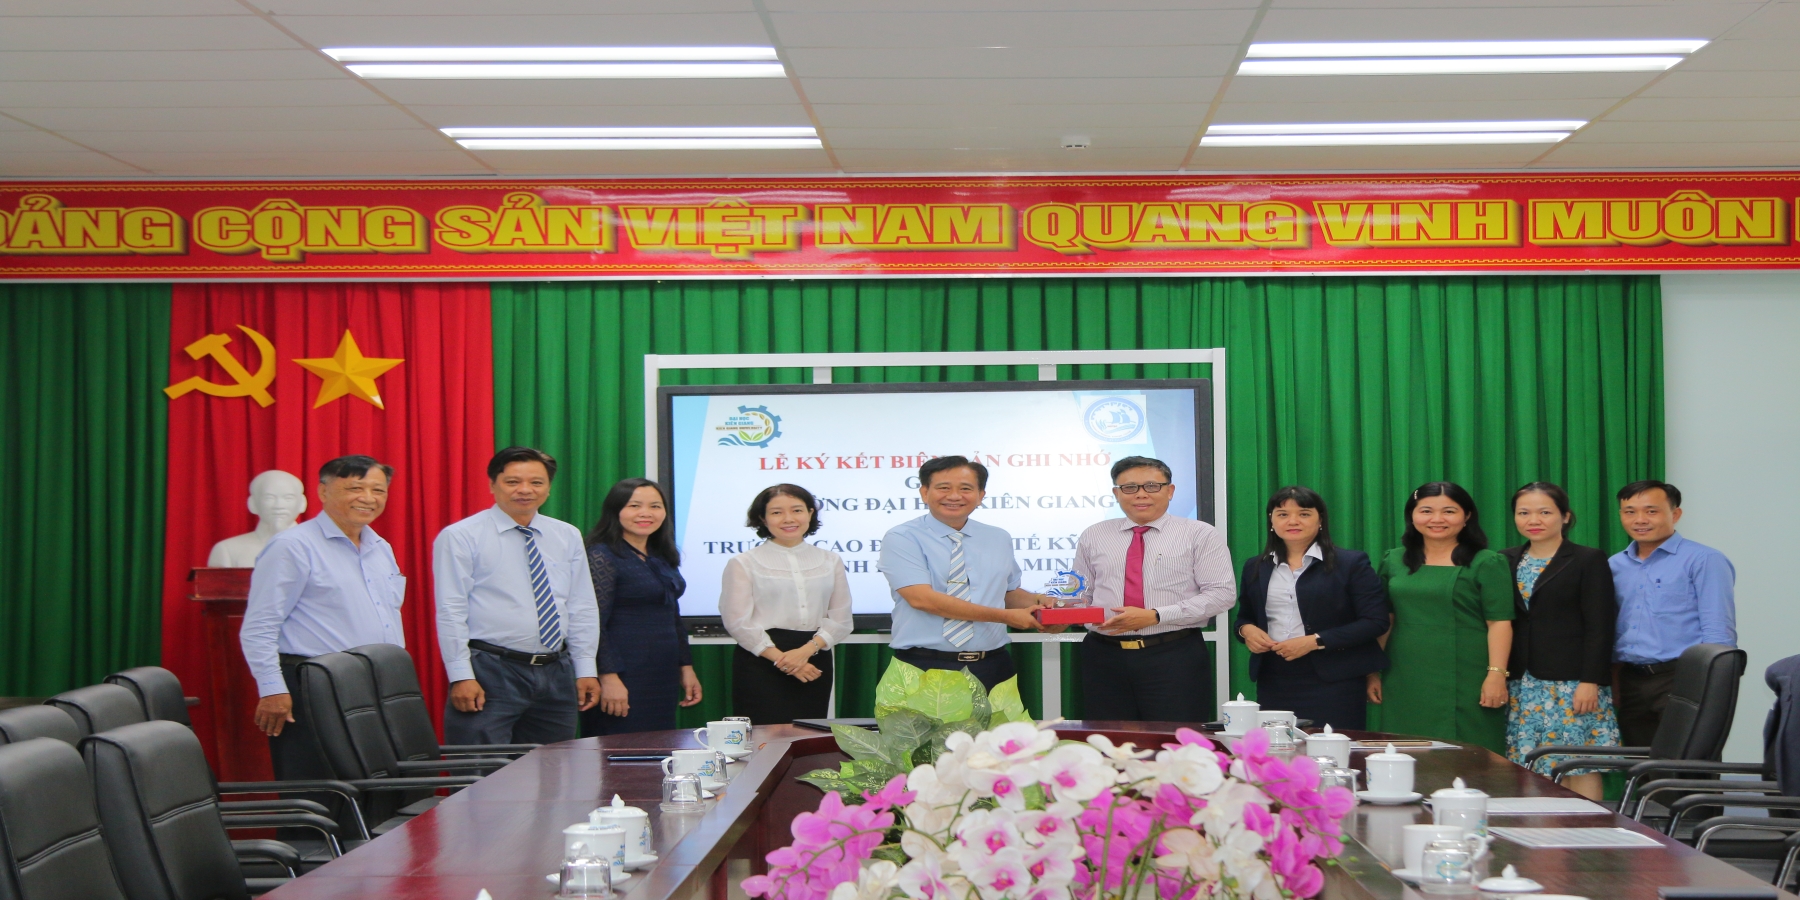 Trường Đại học Kiên Giang ký kết đào tạo với Trường Cao đẳng Kinh tế - Kỹ thuật TP. Hồ Chí Minh